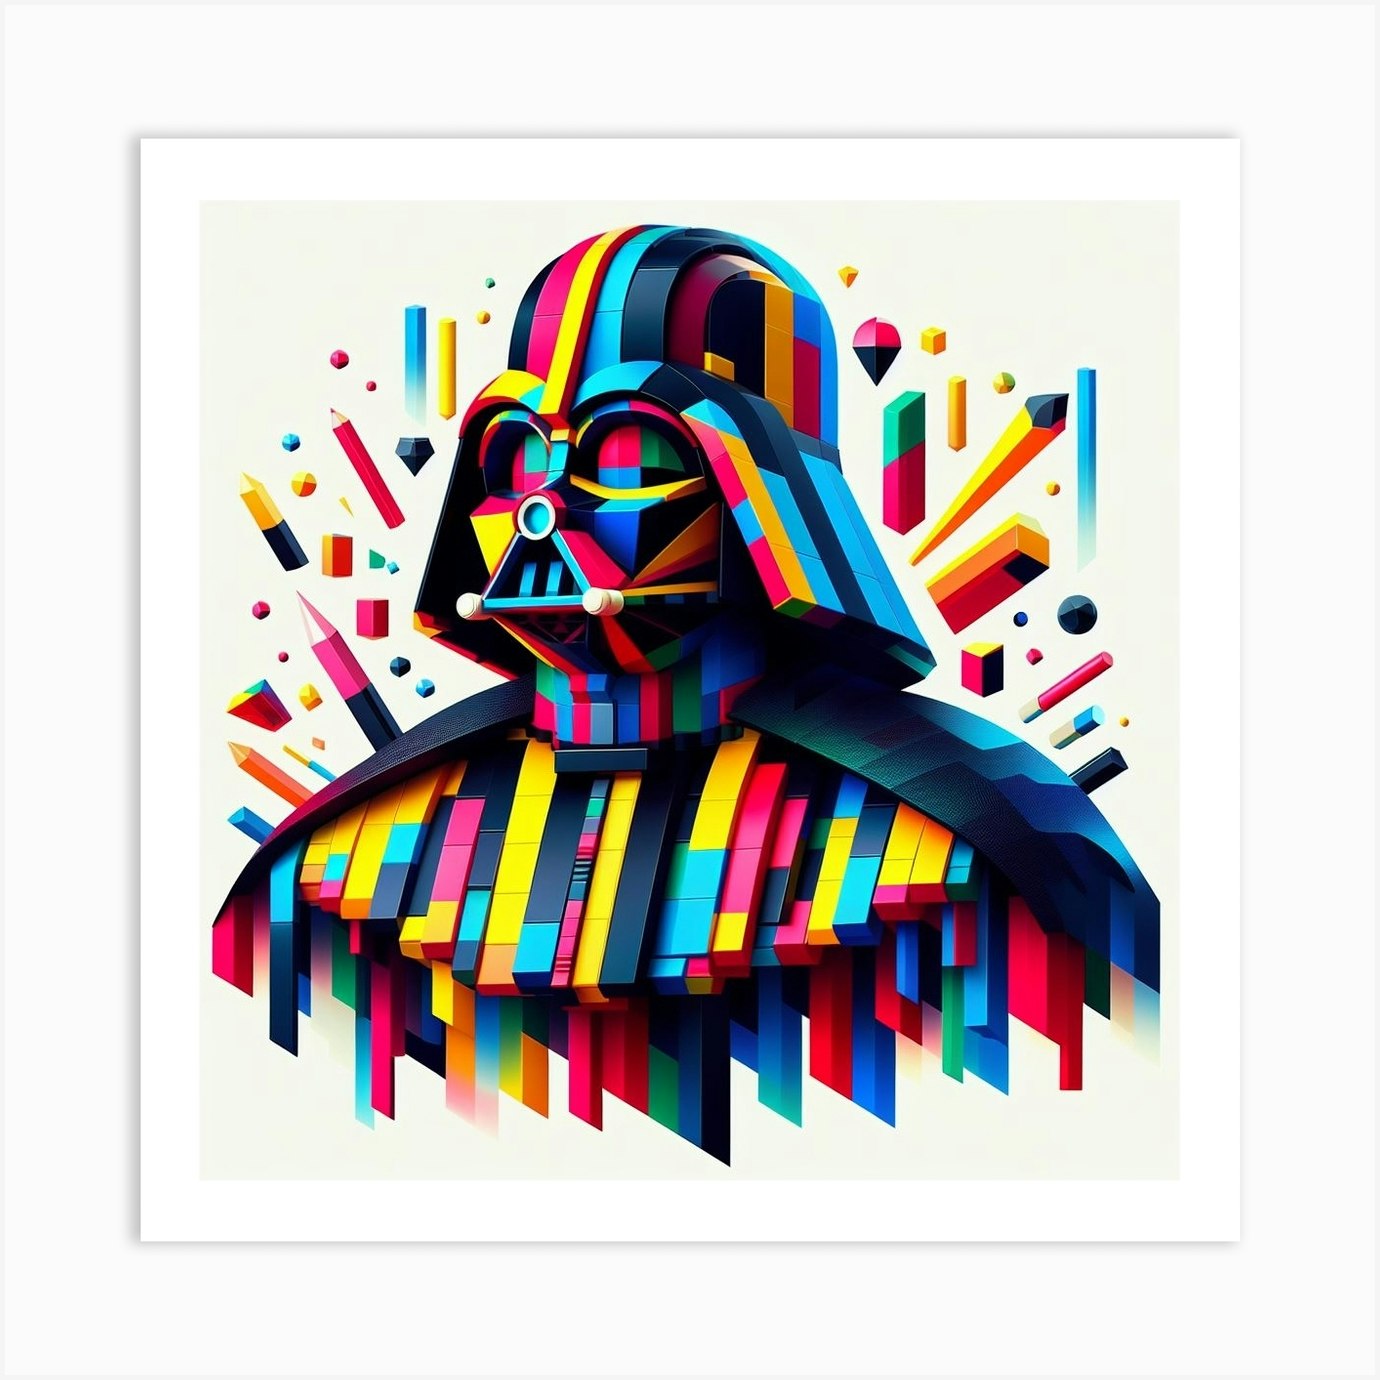 Darth Vader  Star wars prints, Star wars pictures, Vader star wars